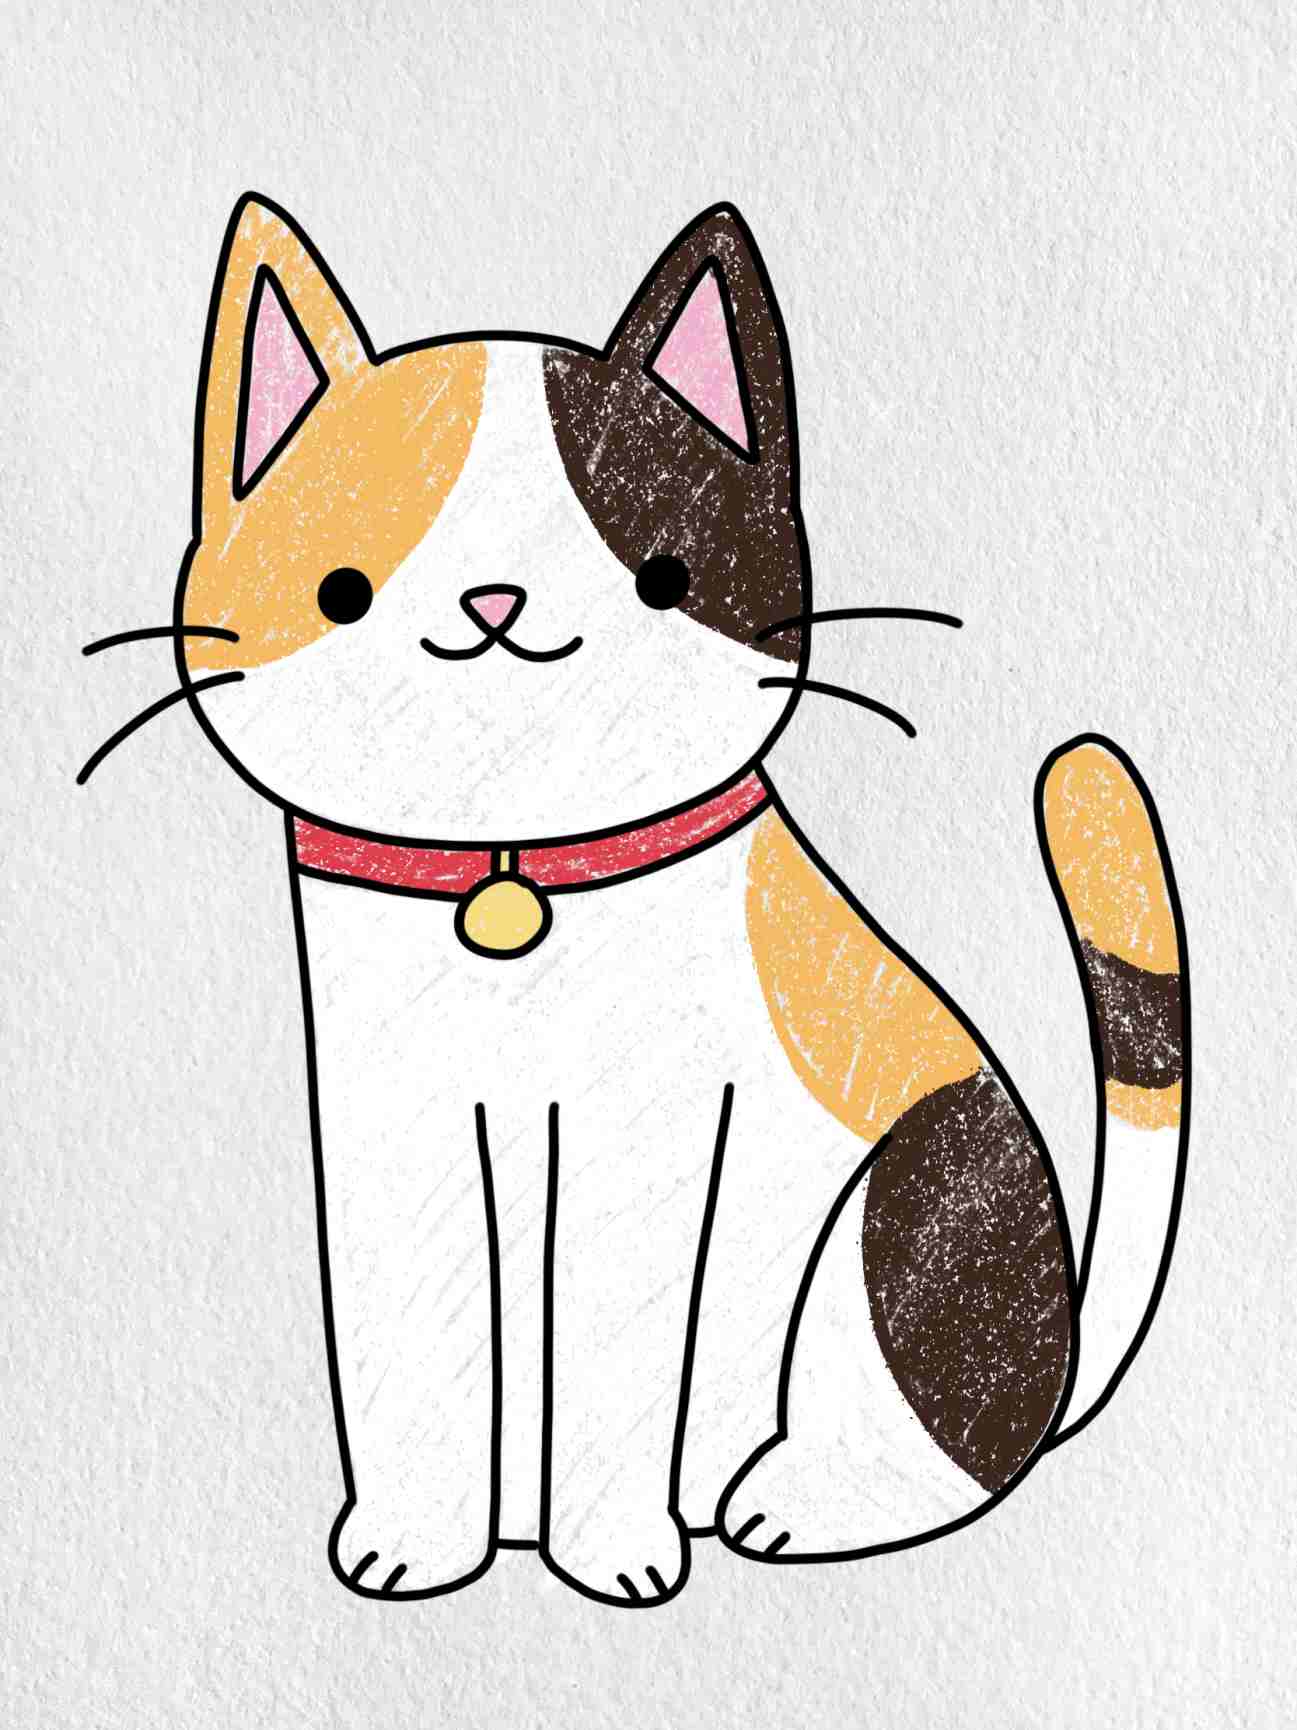 Xem hơn 48 ảnh về hình vẽ mèo cute đơn giản  NEC